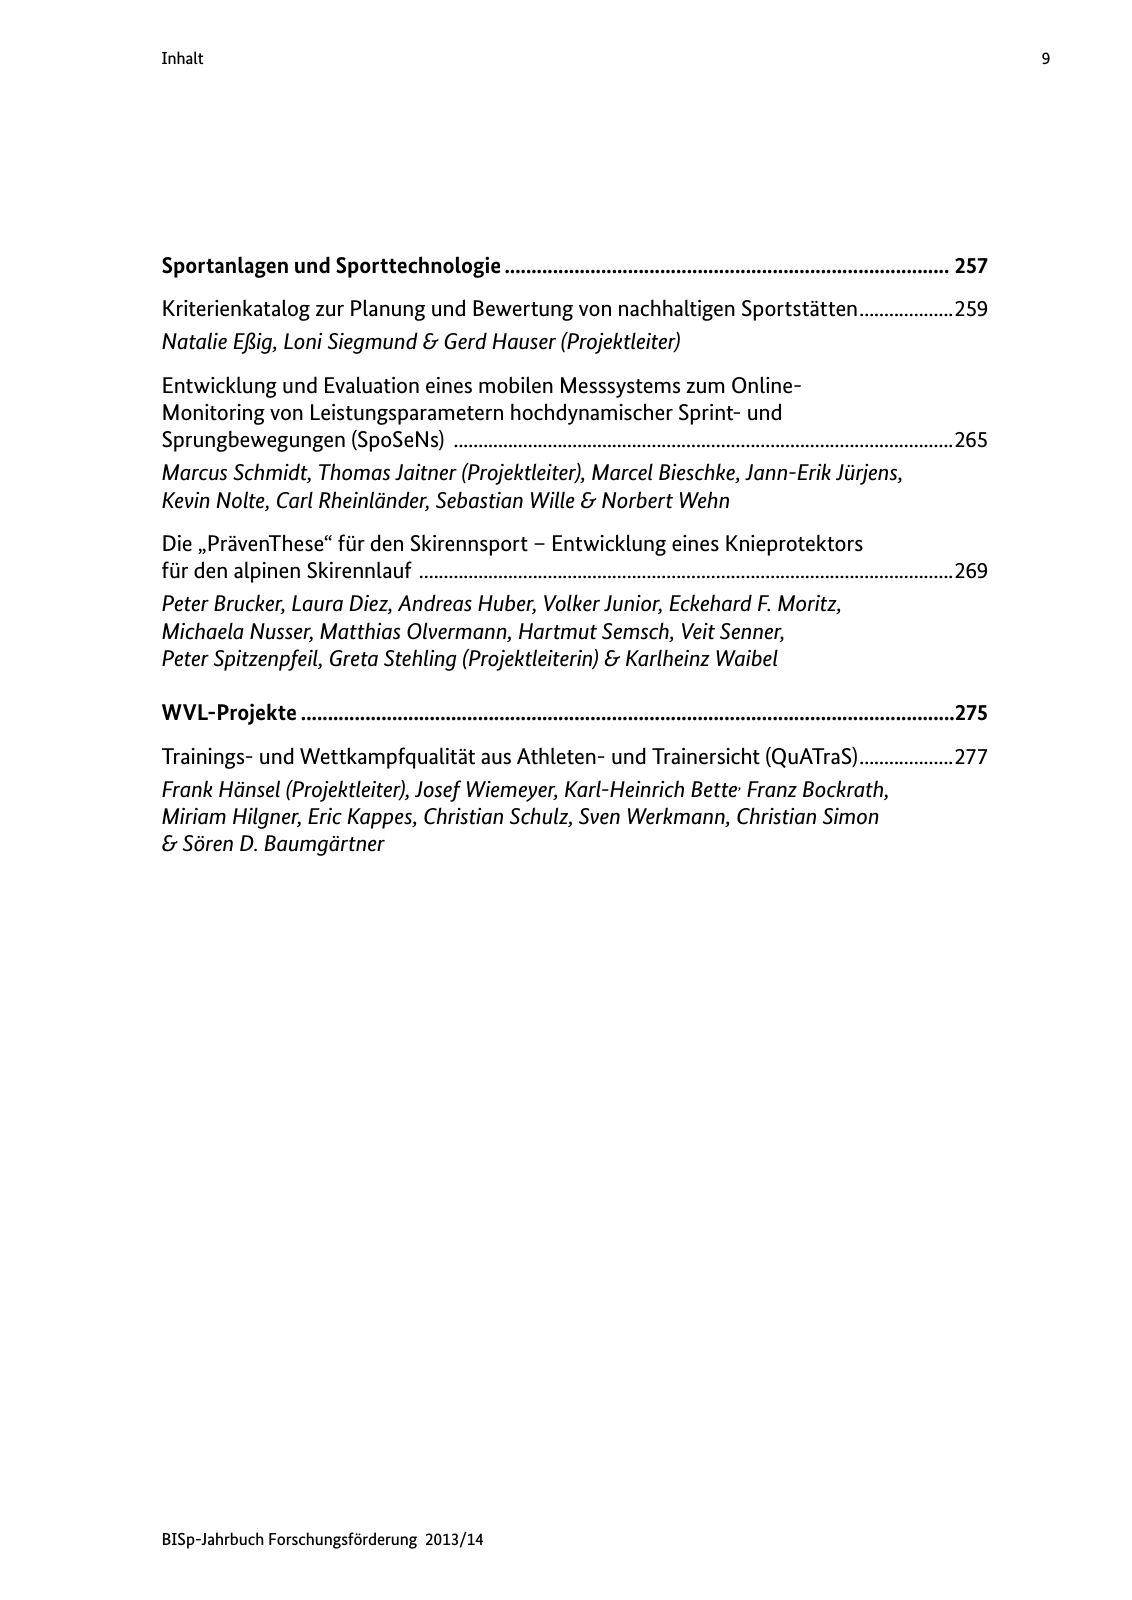 Vorschau BISp-Jahrbuch Forschungsförderung 2013/14 Seite 10